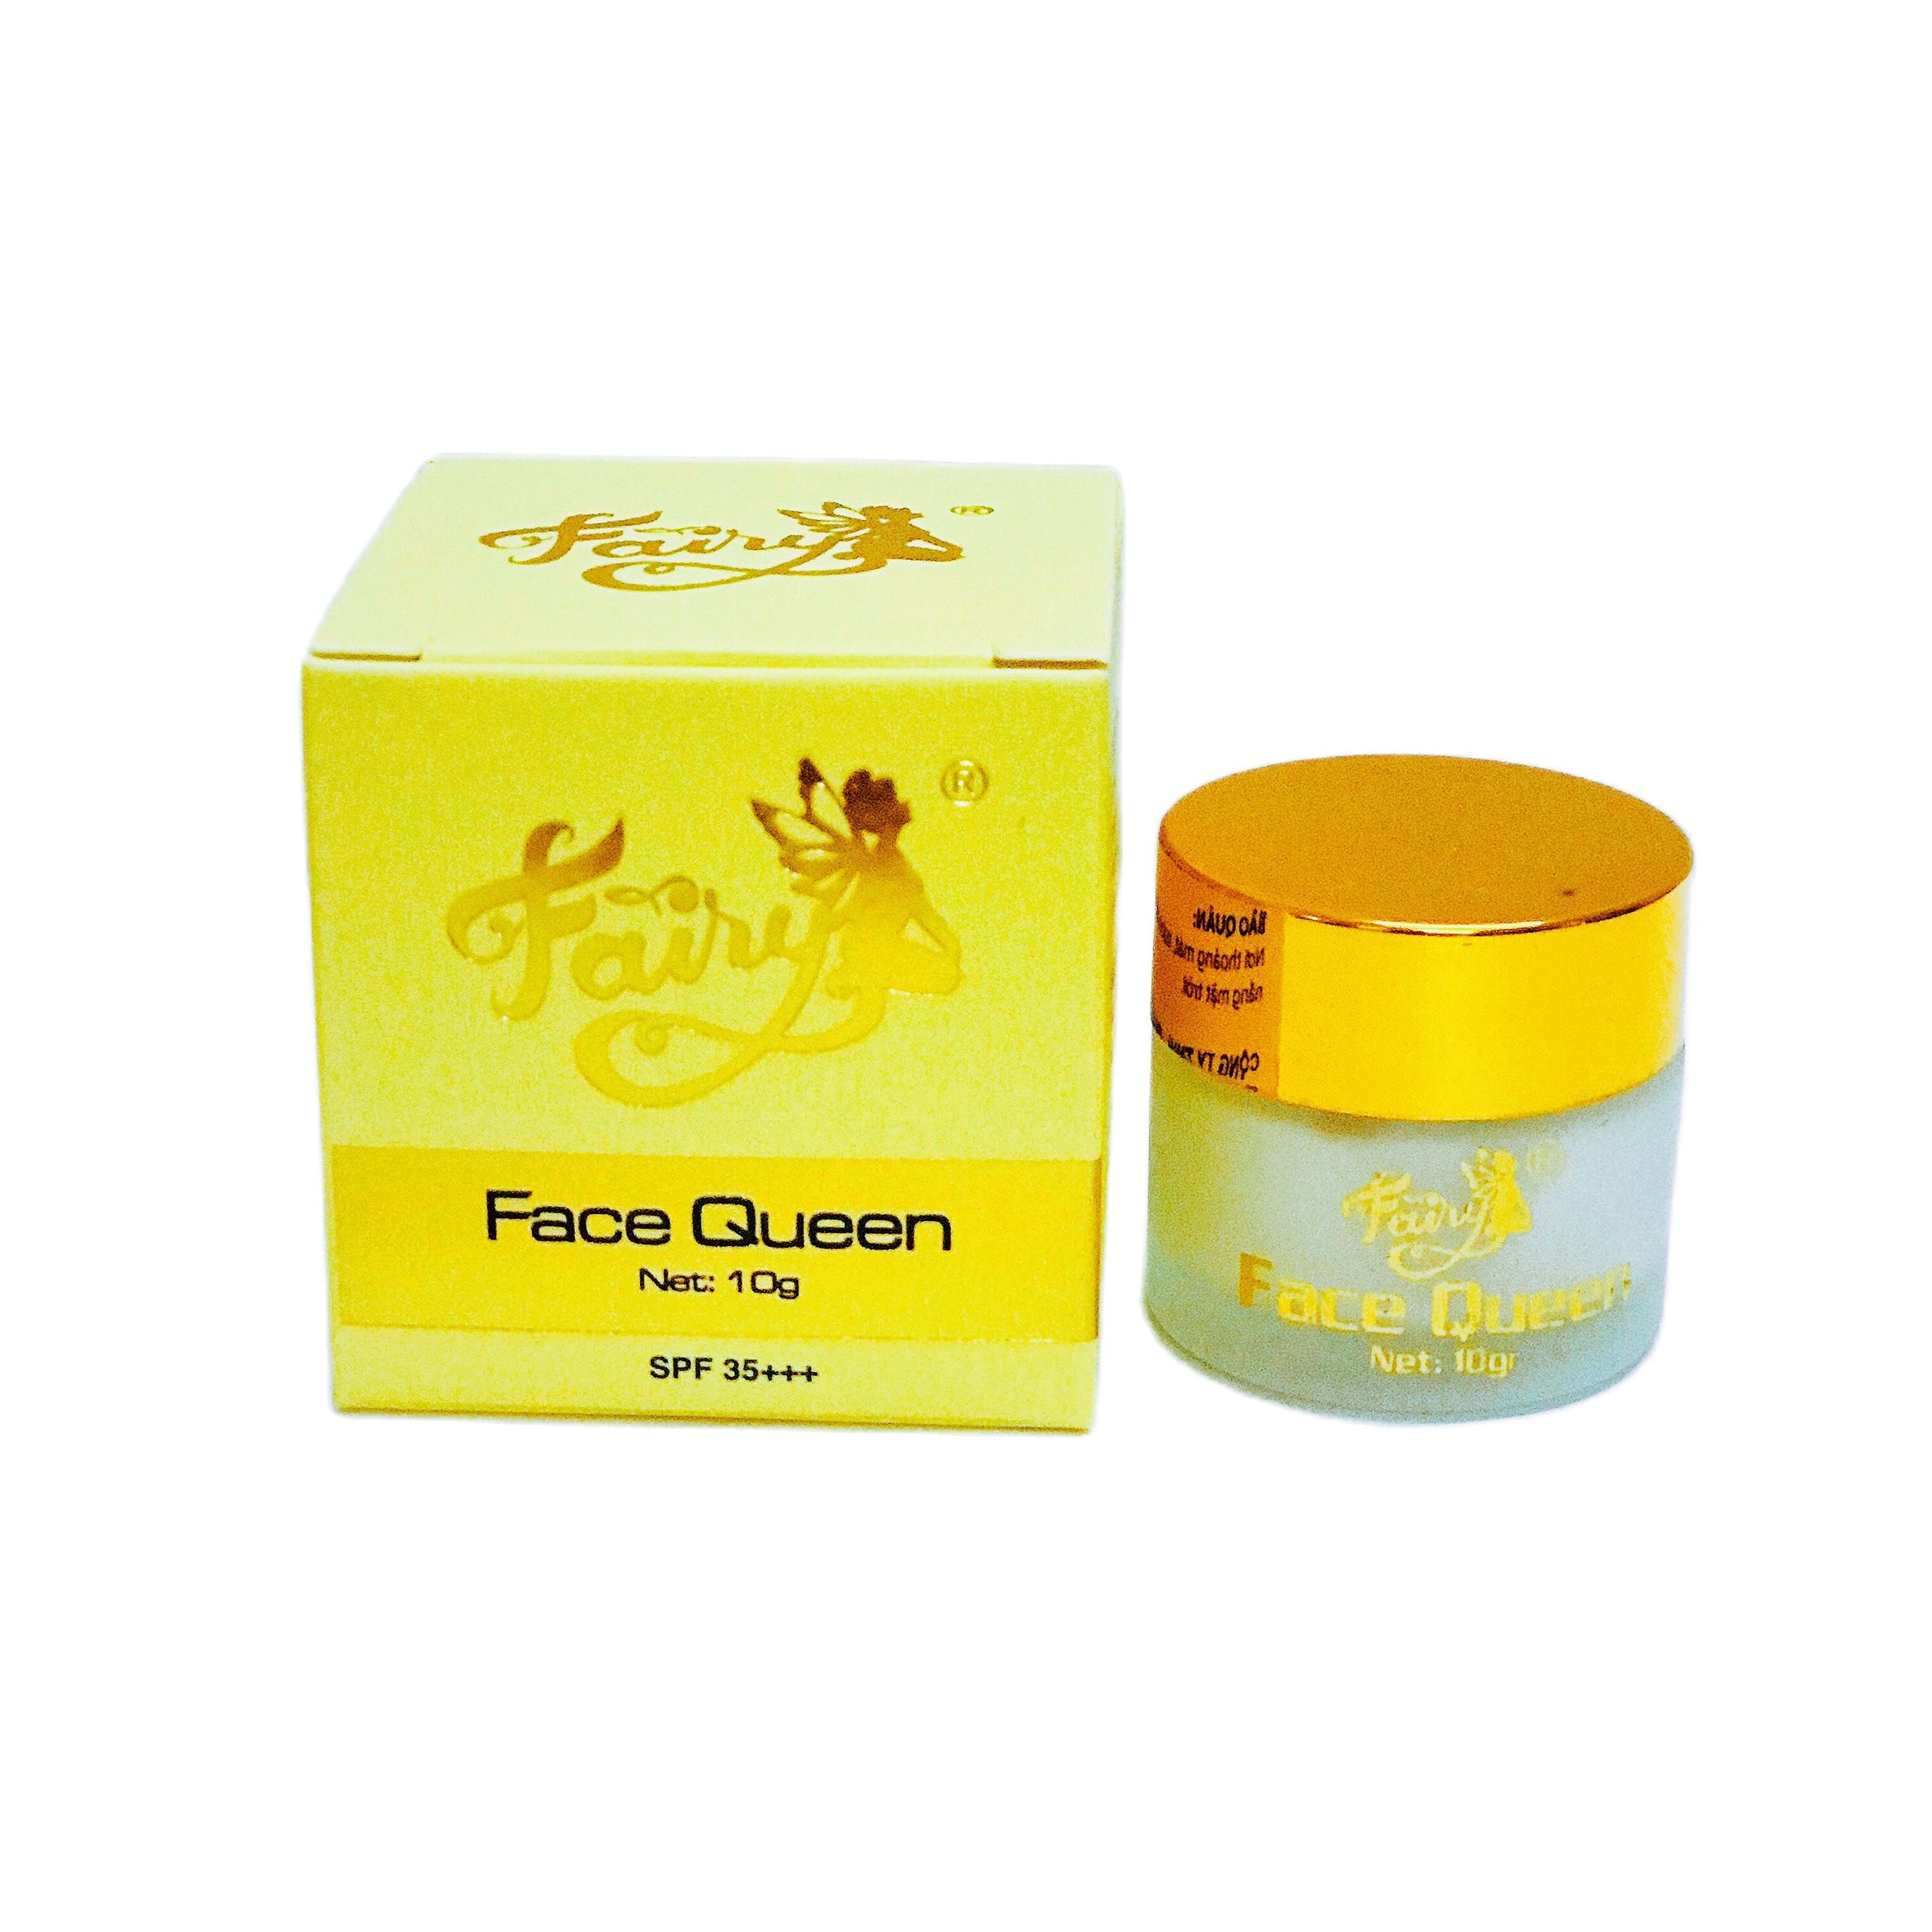 mỹ phẩm Fairy kem face Queen mini 10g+ serum thảo mộc+ chống nắng fairy 15g - bộ 3 sản phẩm dưỡng trắng da ngừa mụn mờ thâm nám Fairy mini chính hãng